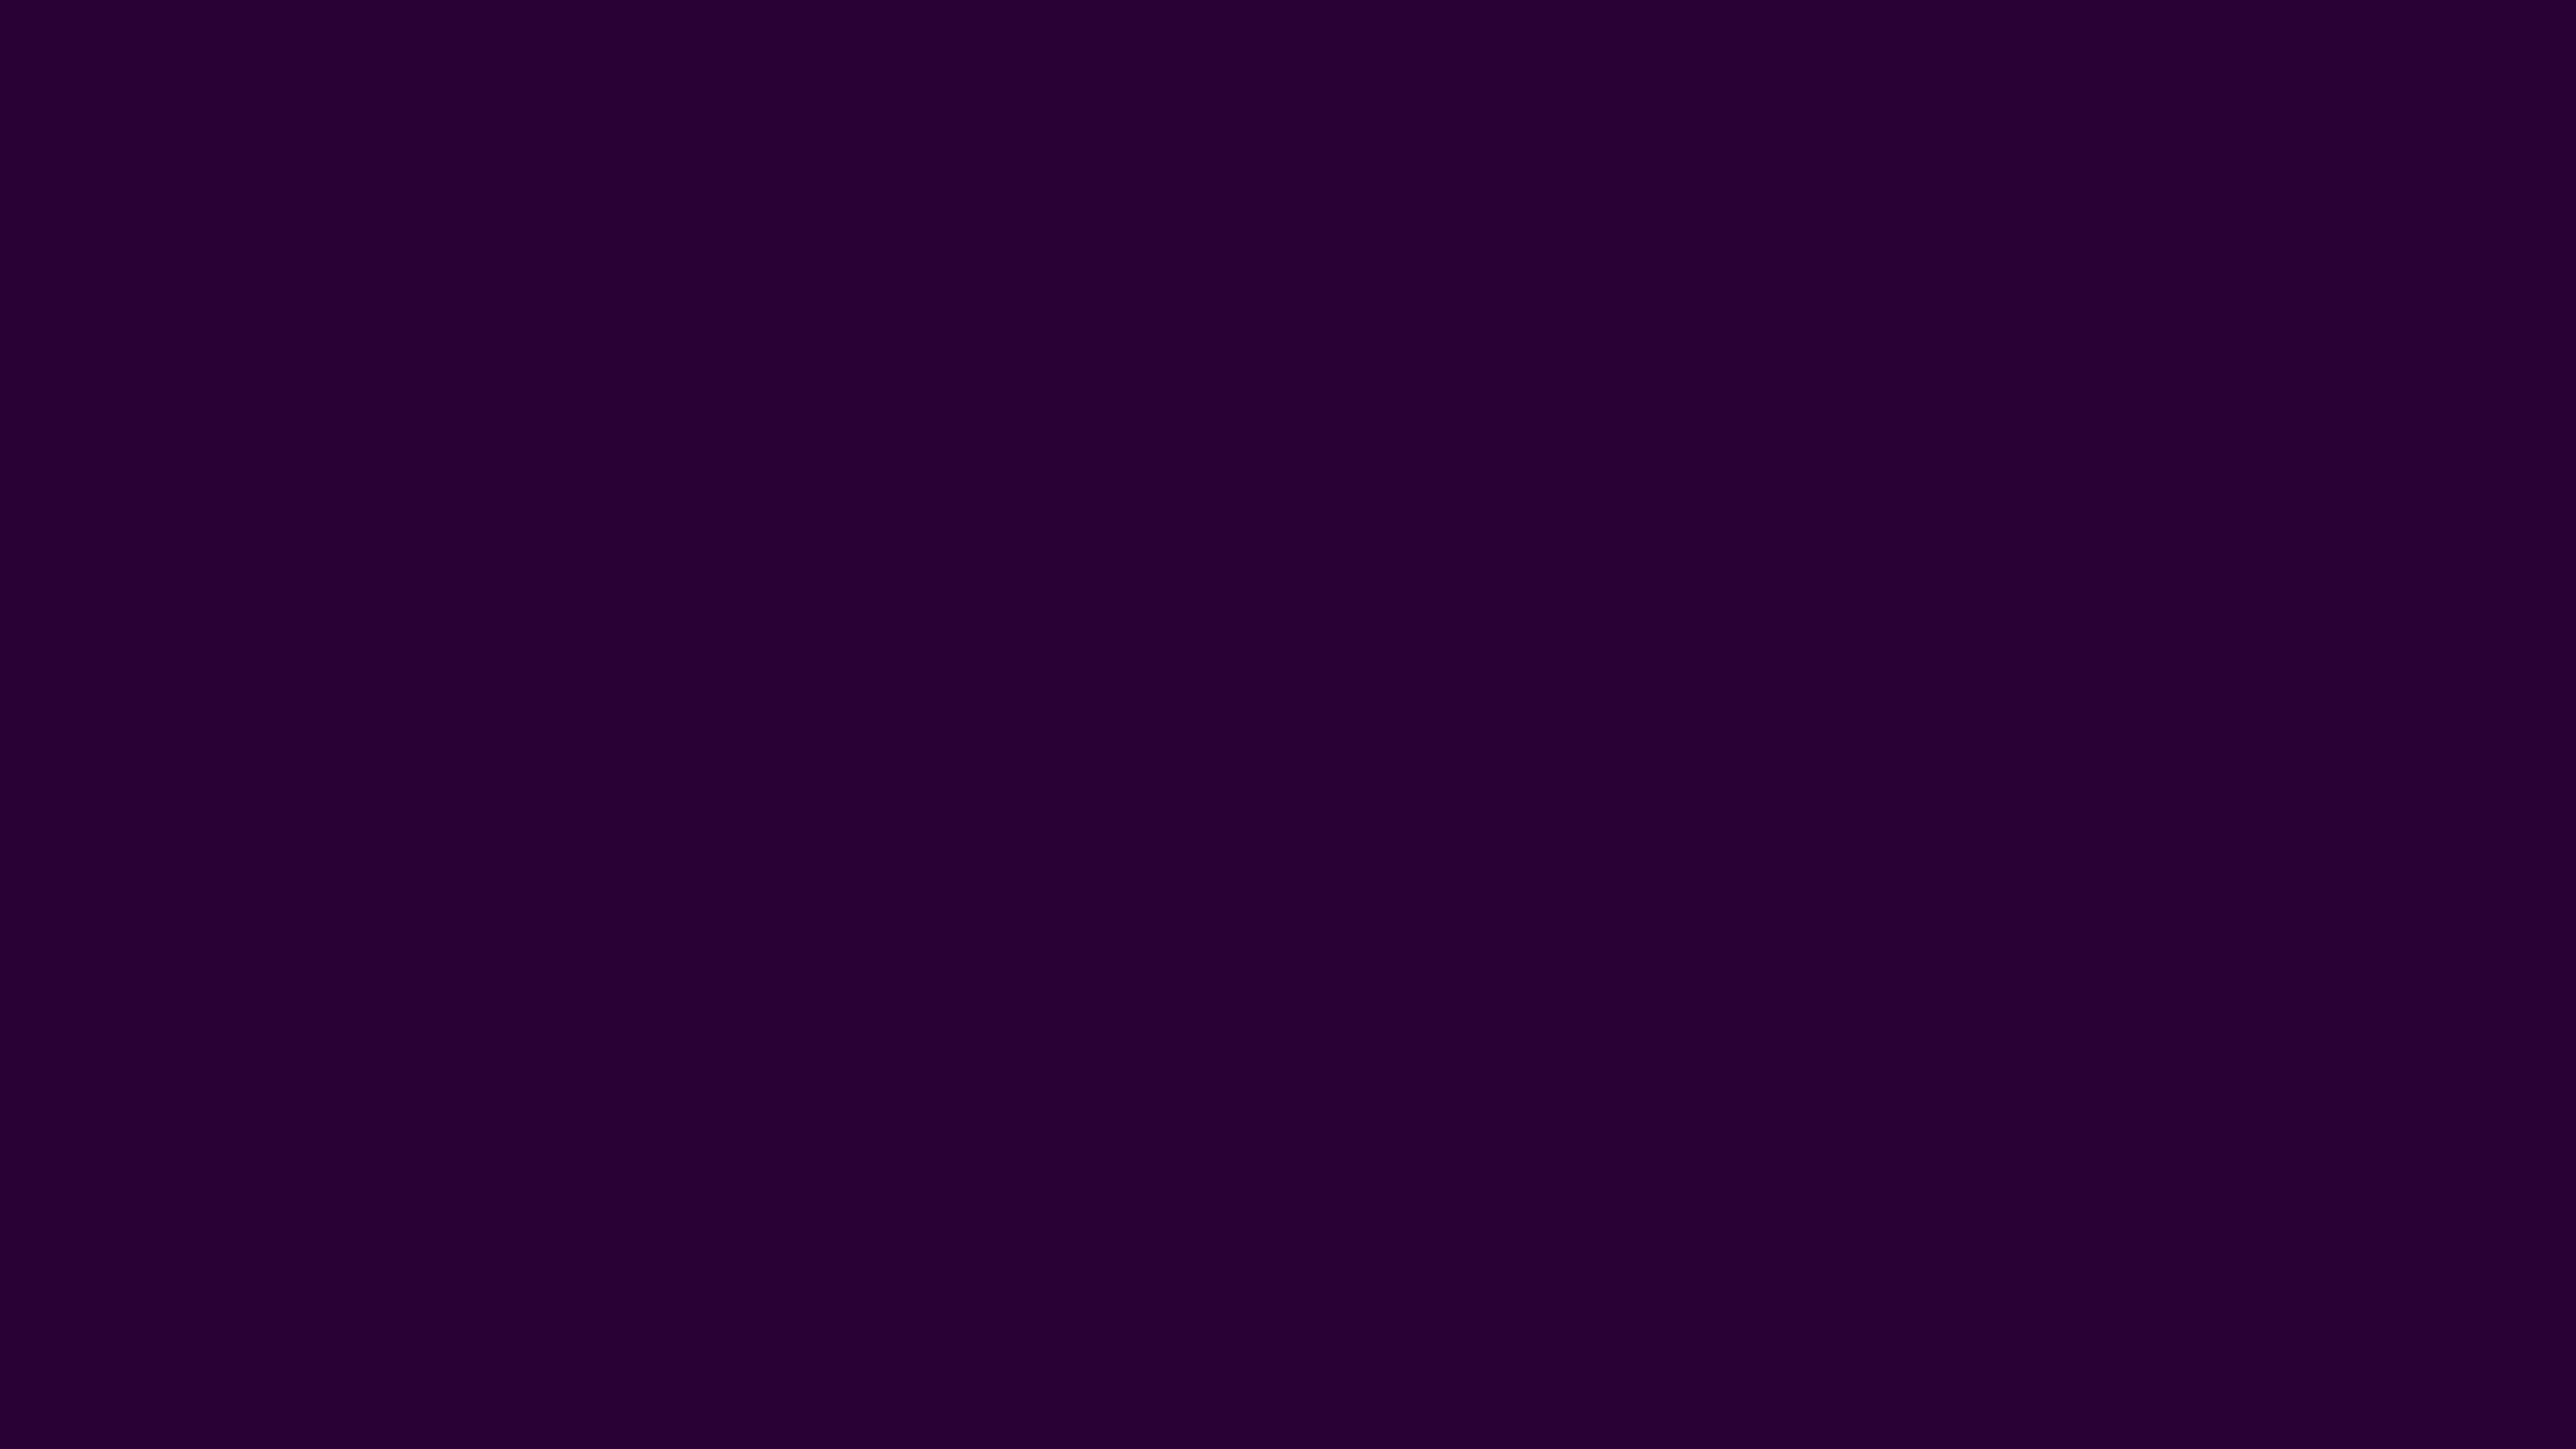 Download Abstract Dark Purple Iphone Wallpaper | Wallpapers.com